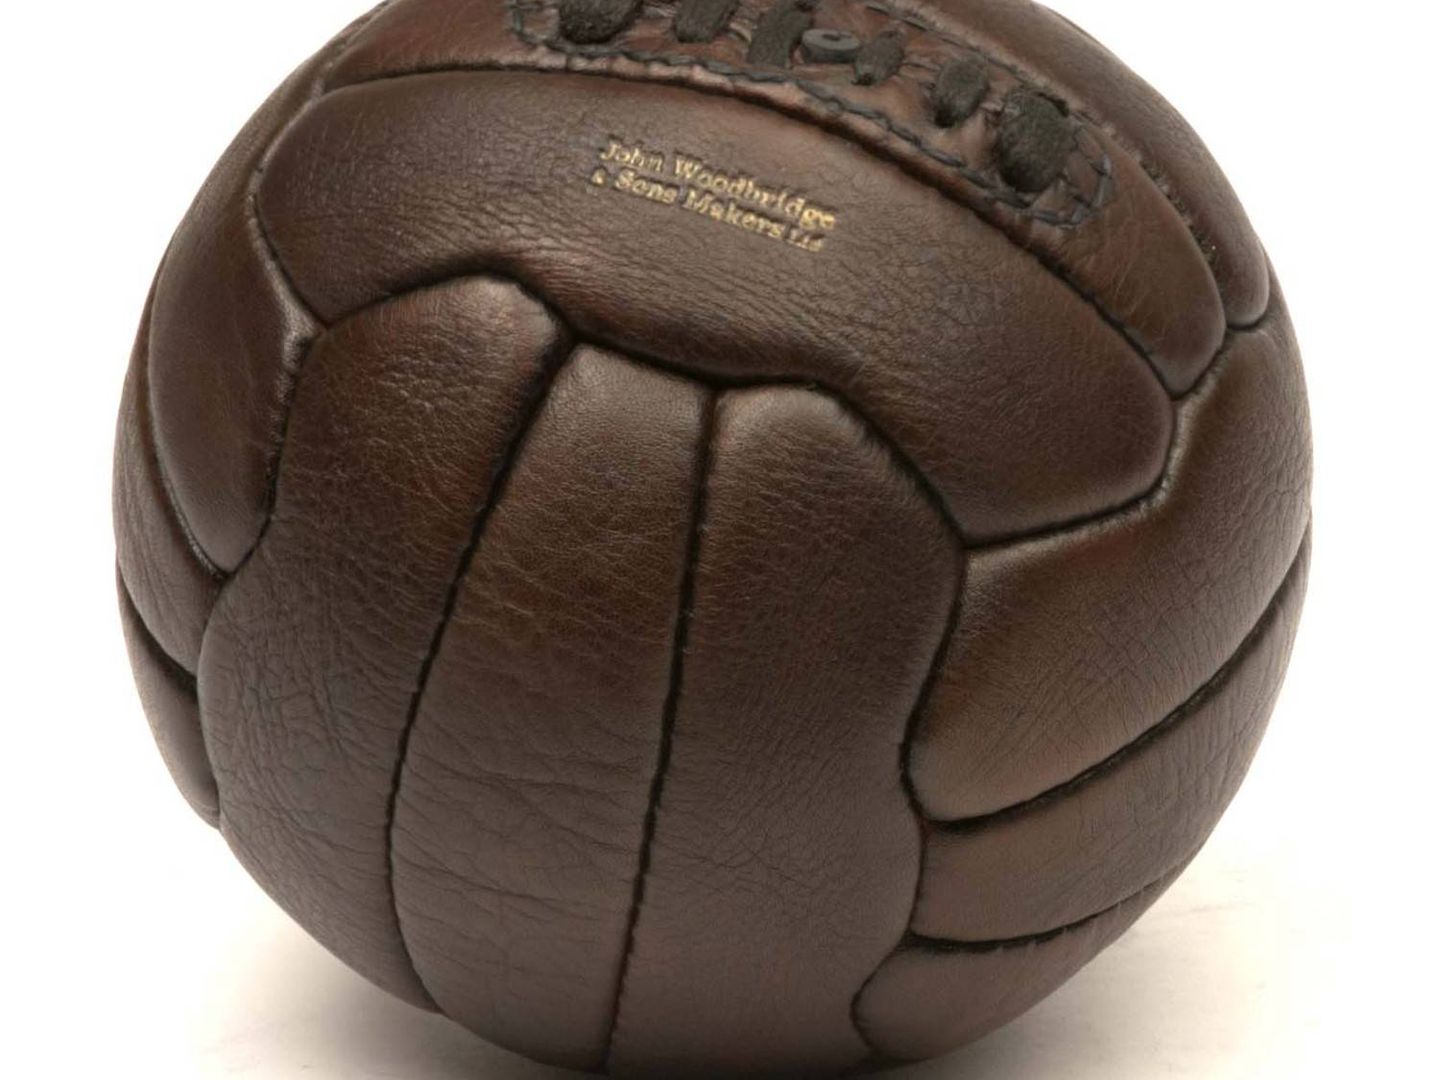 Balón usado en los años cincuenta y sesenta.